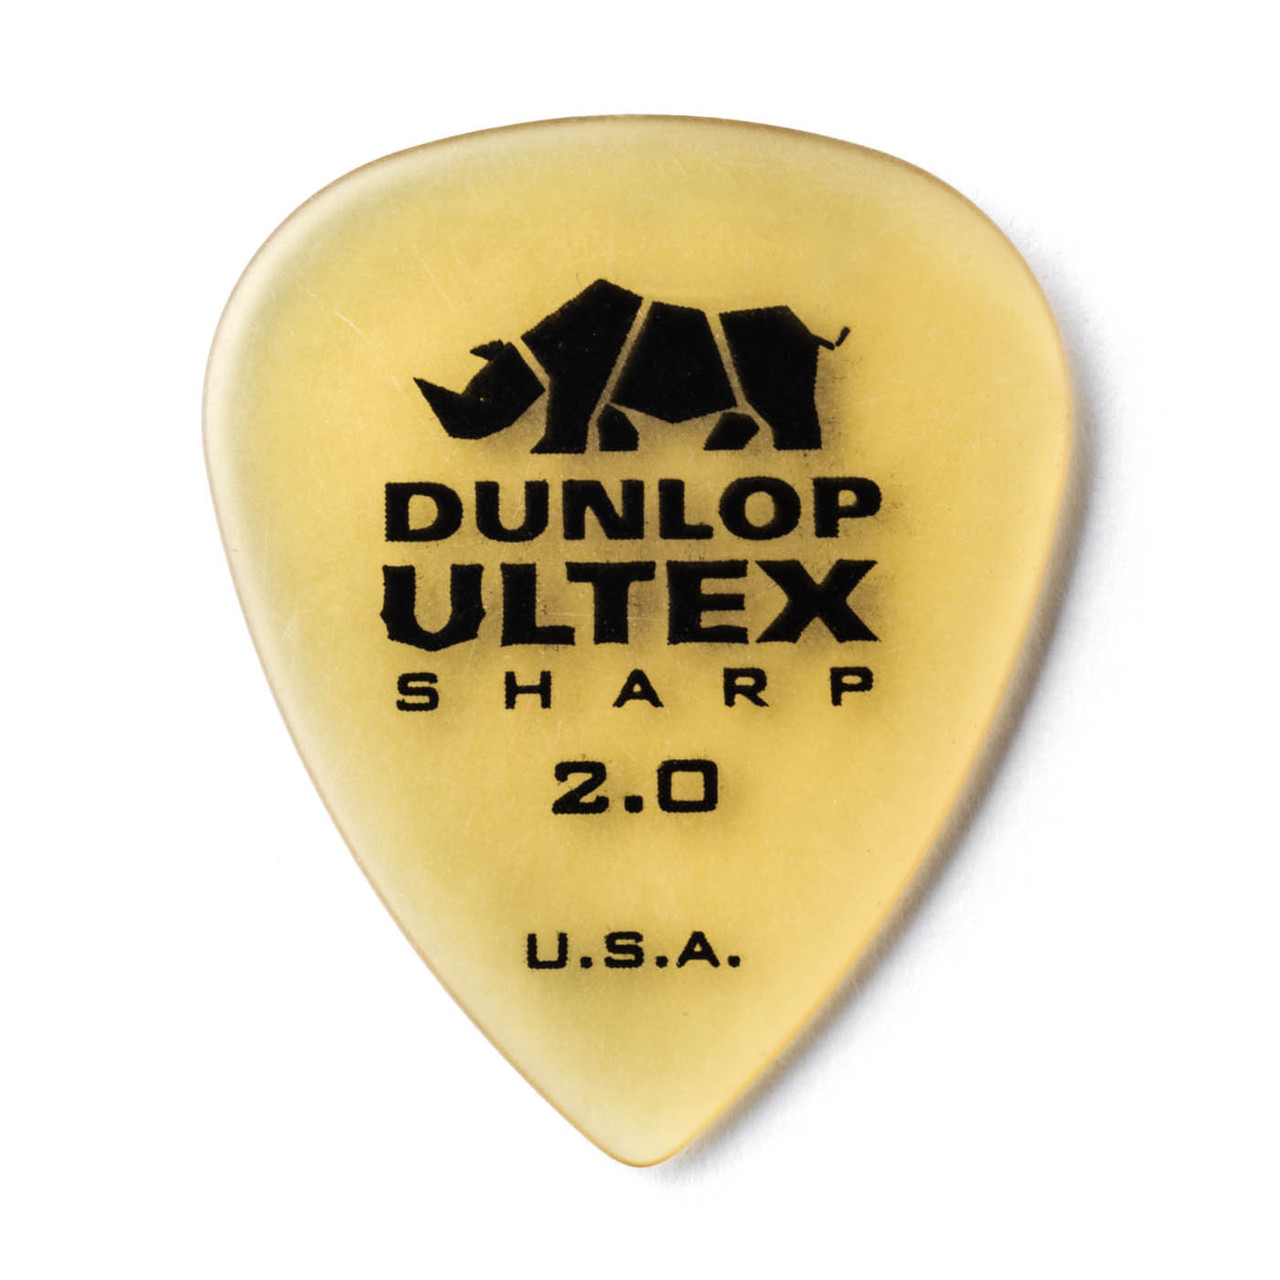 Billede af Dunlop Ultex Sharp 2,00